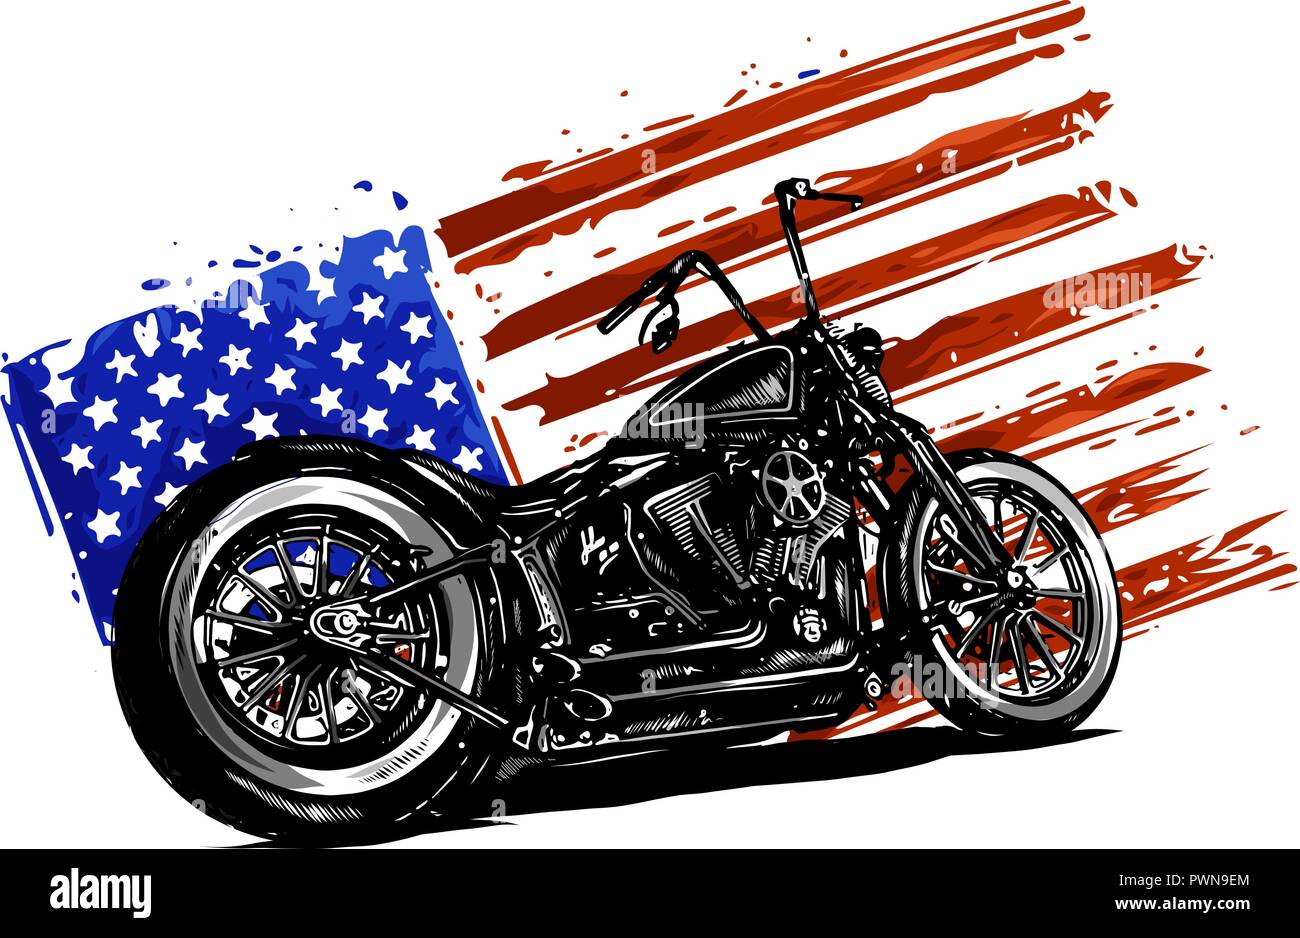 Dibujadas a mano y vintage entintada American Chopper motocicleta con bandera americana Ilustración del Vector